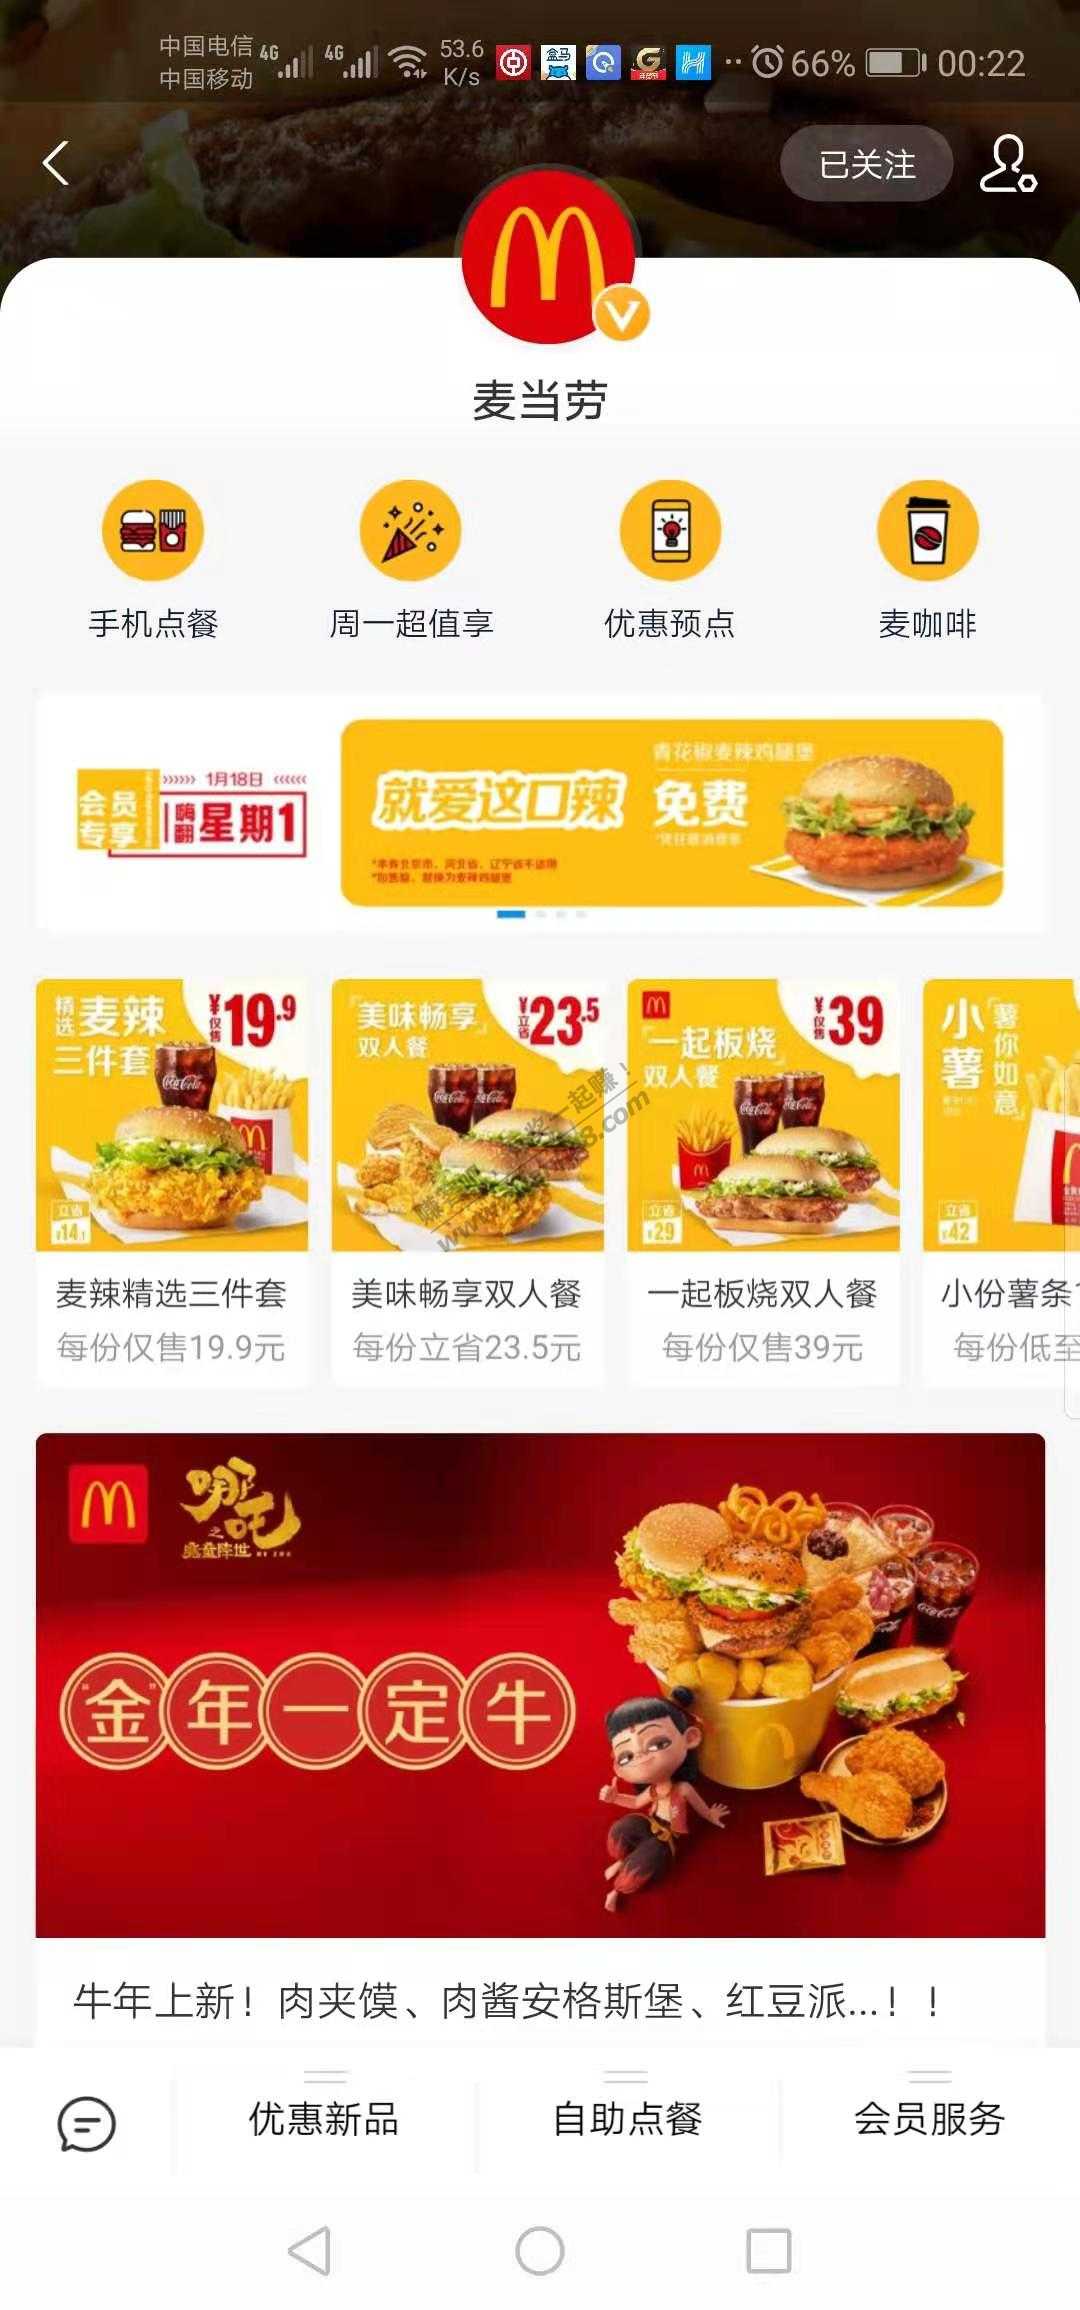 麦当劳-下周一免费花椒鸡腿堡-惠小助(52huixz.com)